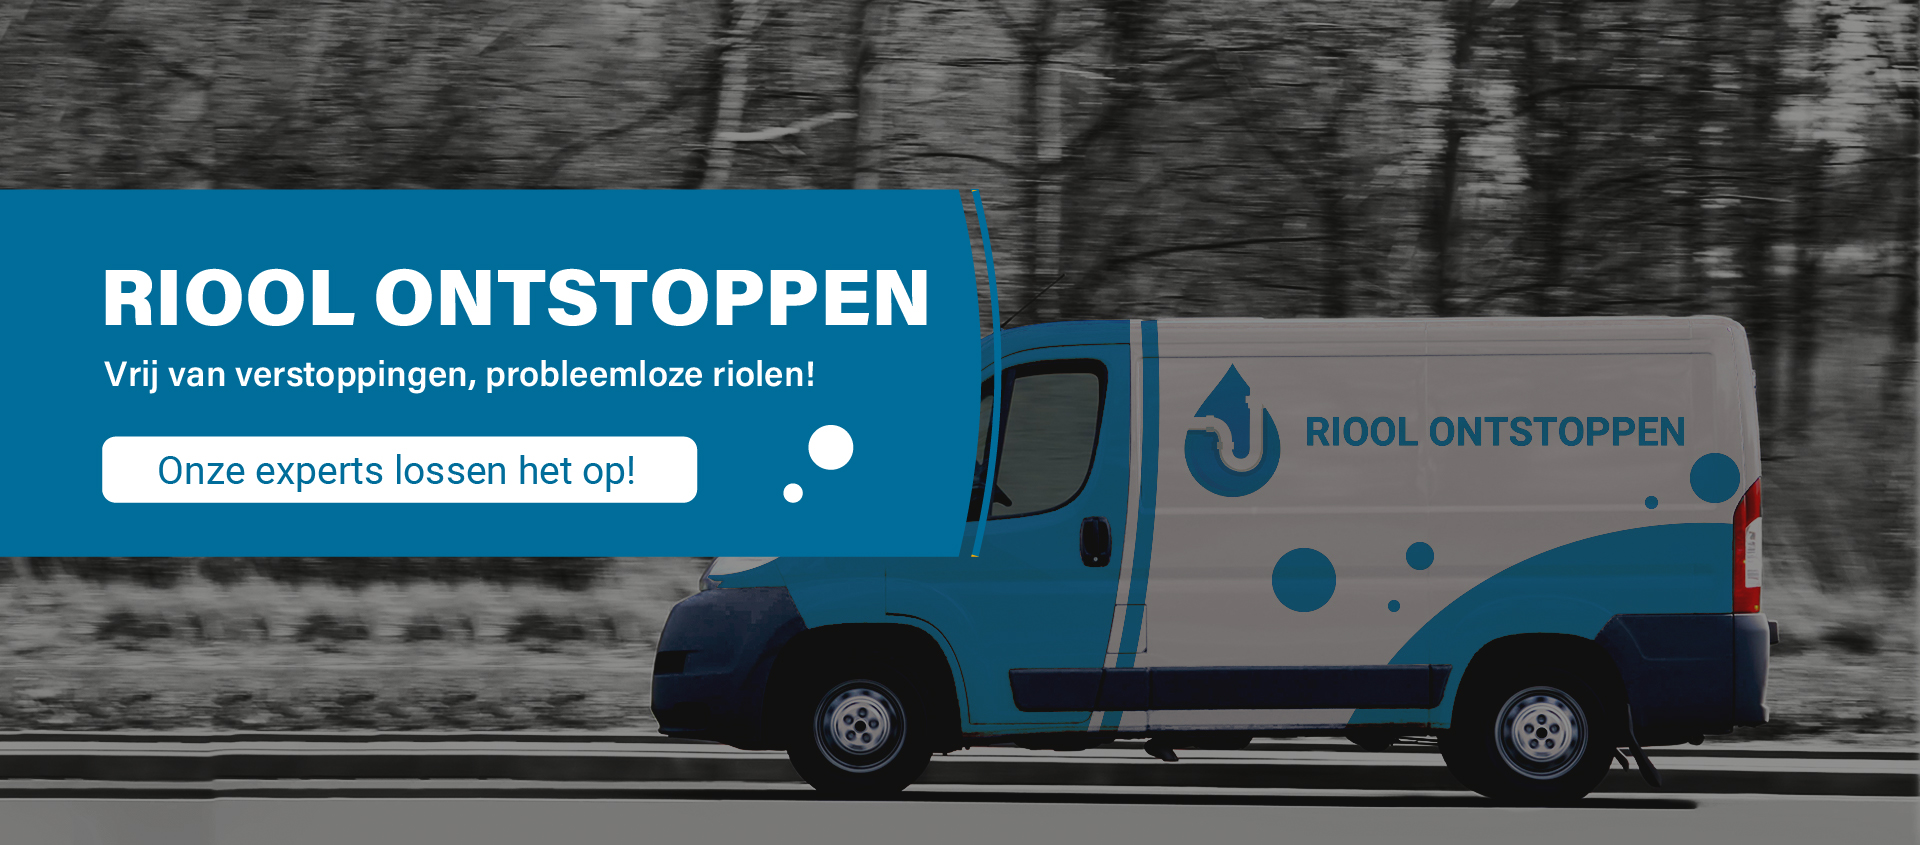 Bus van Riool ontstopppen Delft